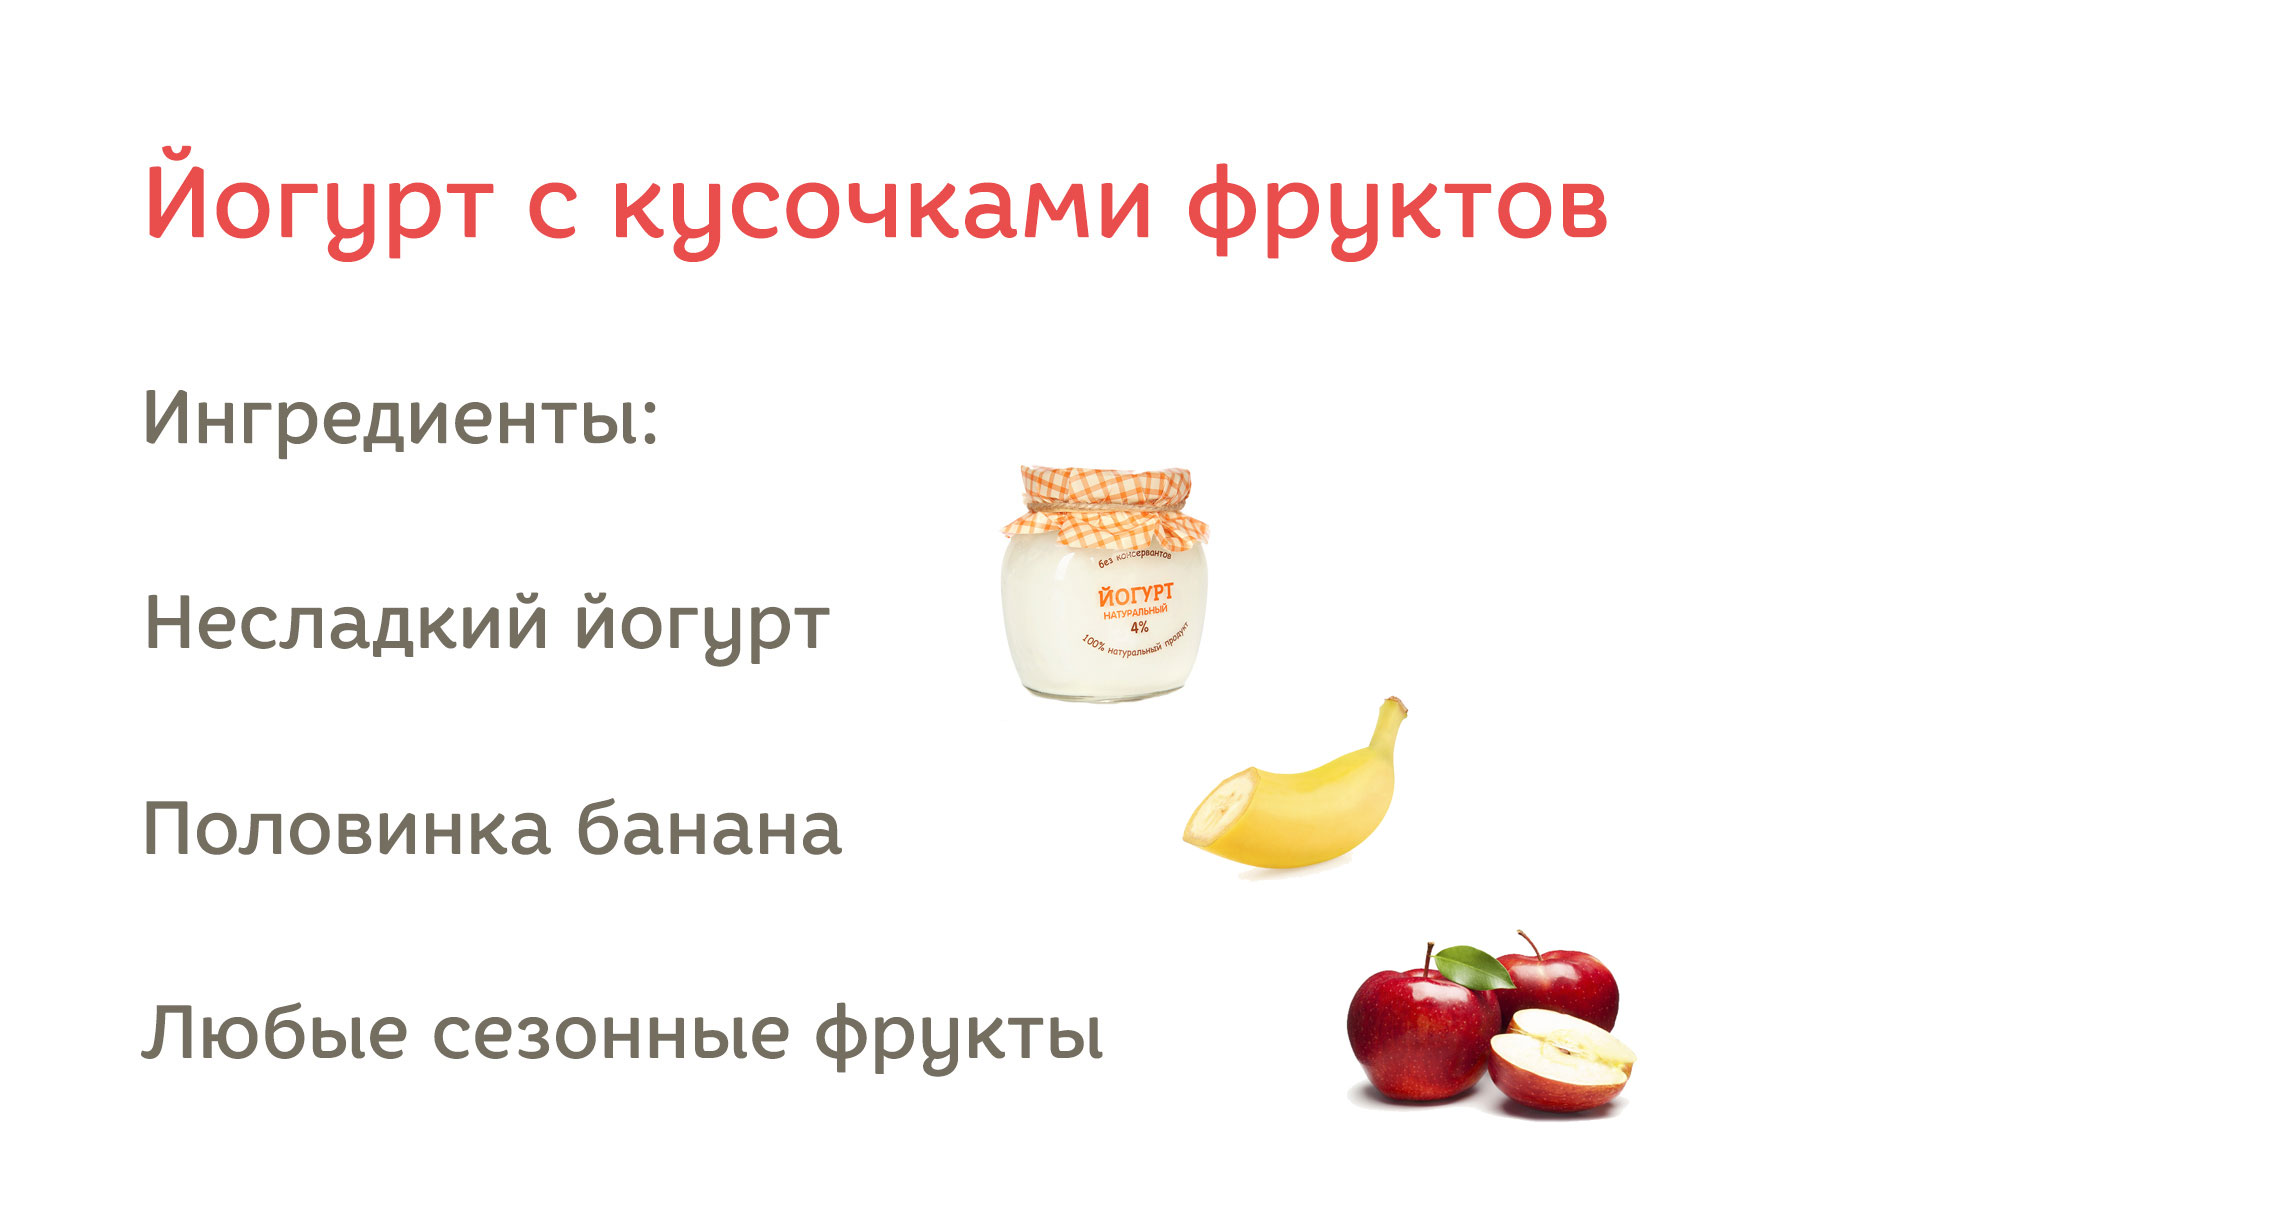 Детские рецепты - рецепты с фото и видео на aikimaster.ru